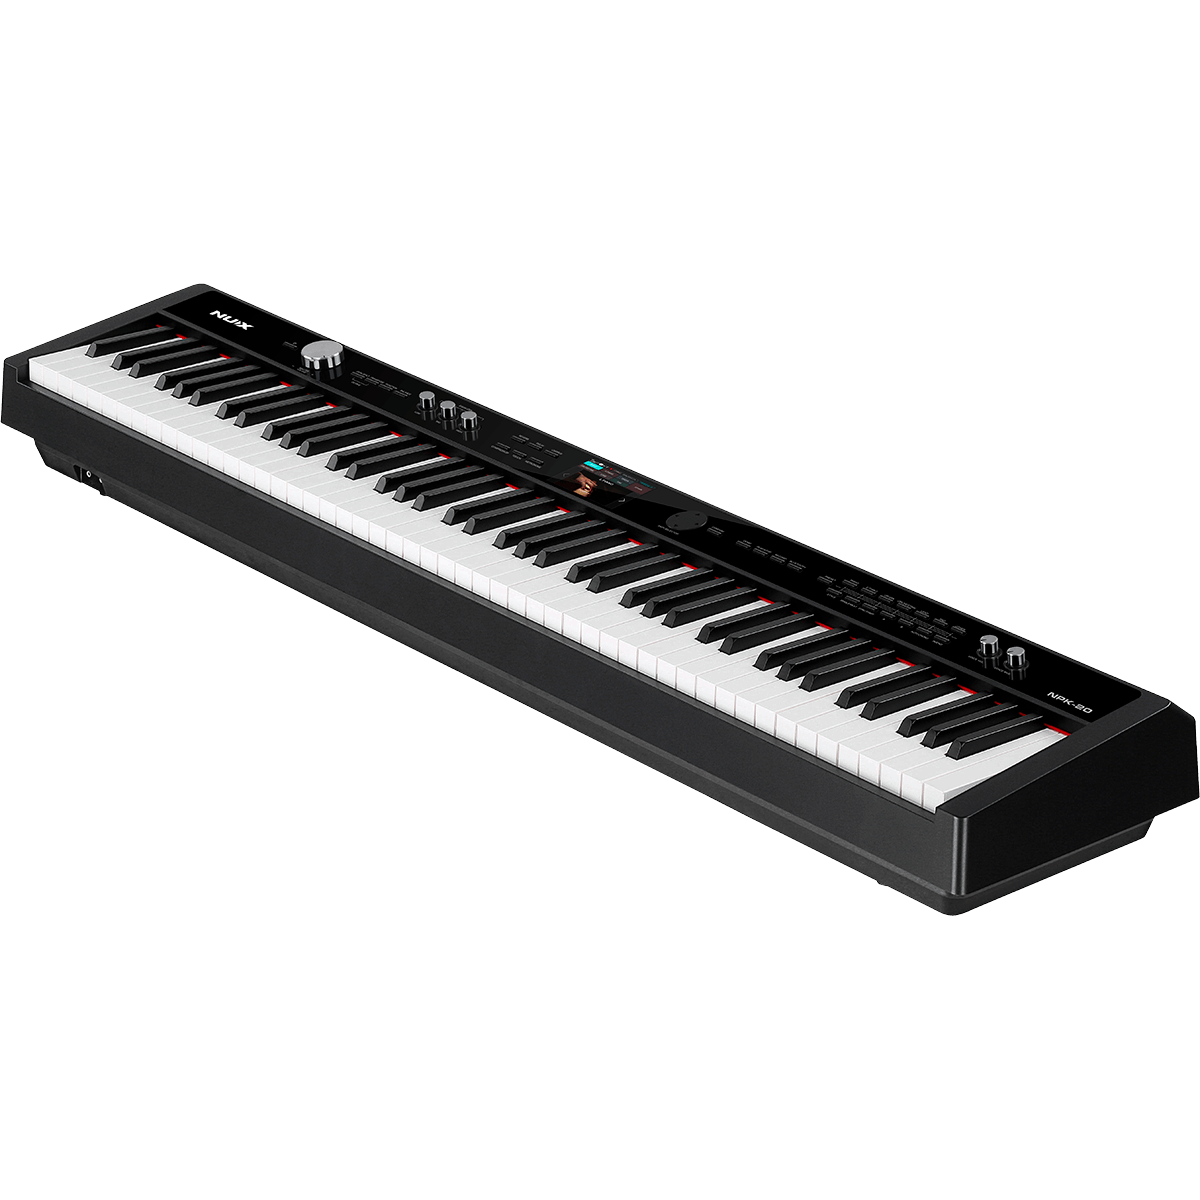 Pianos numériques portables - NUX - NPK-20 (NOIR)